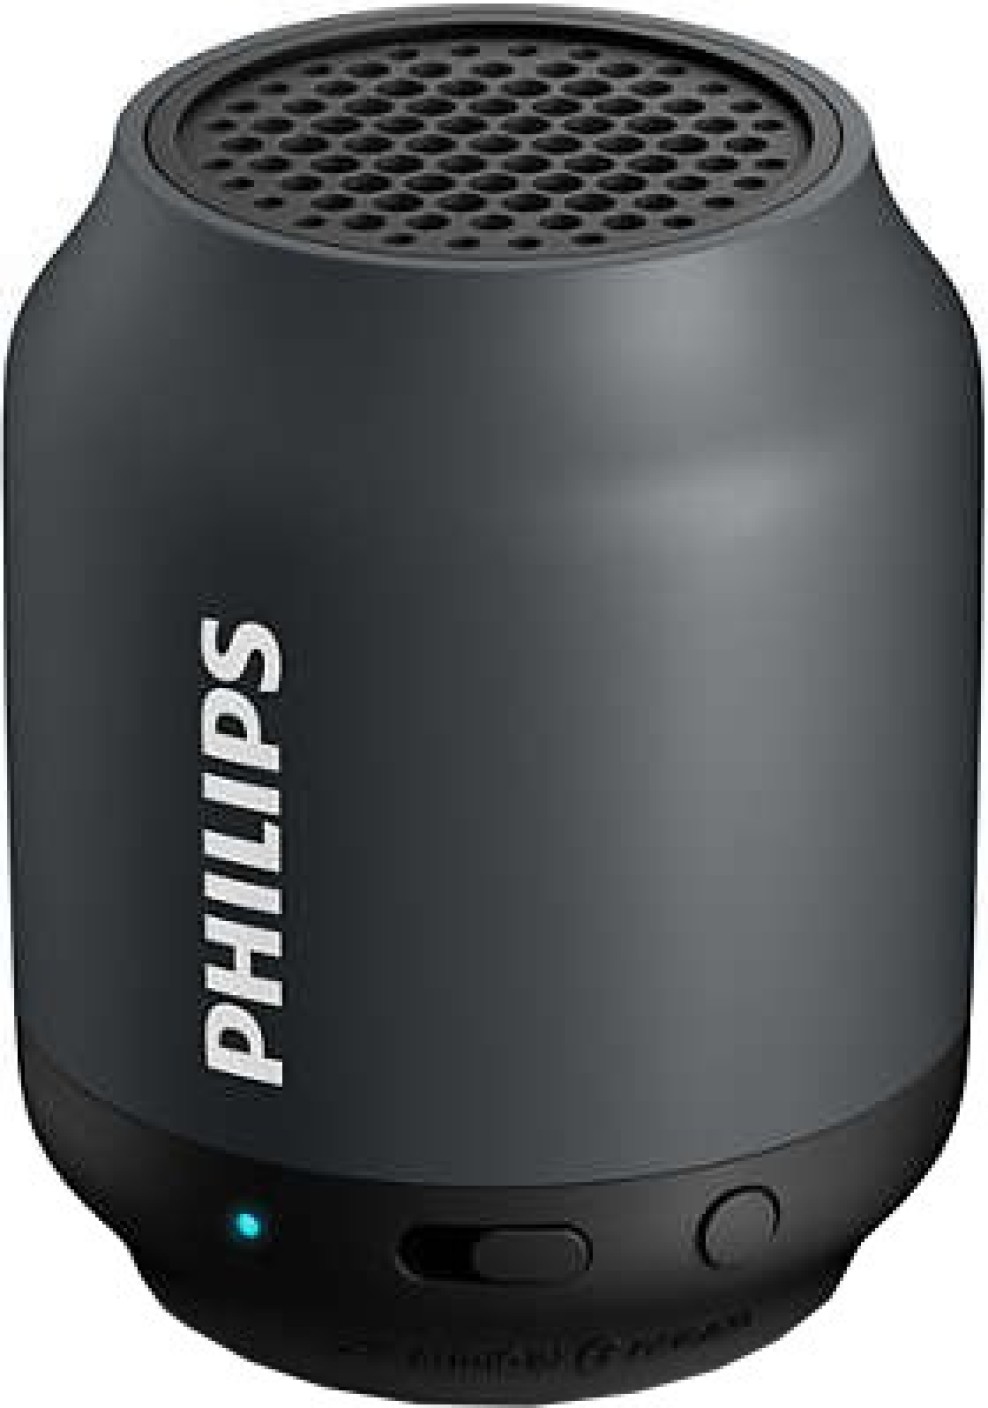 Buy Philips Wireless Portable Speaker Online from Flipkart.com